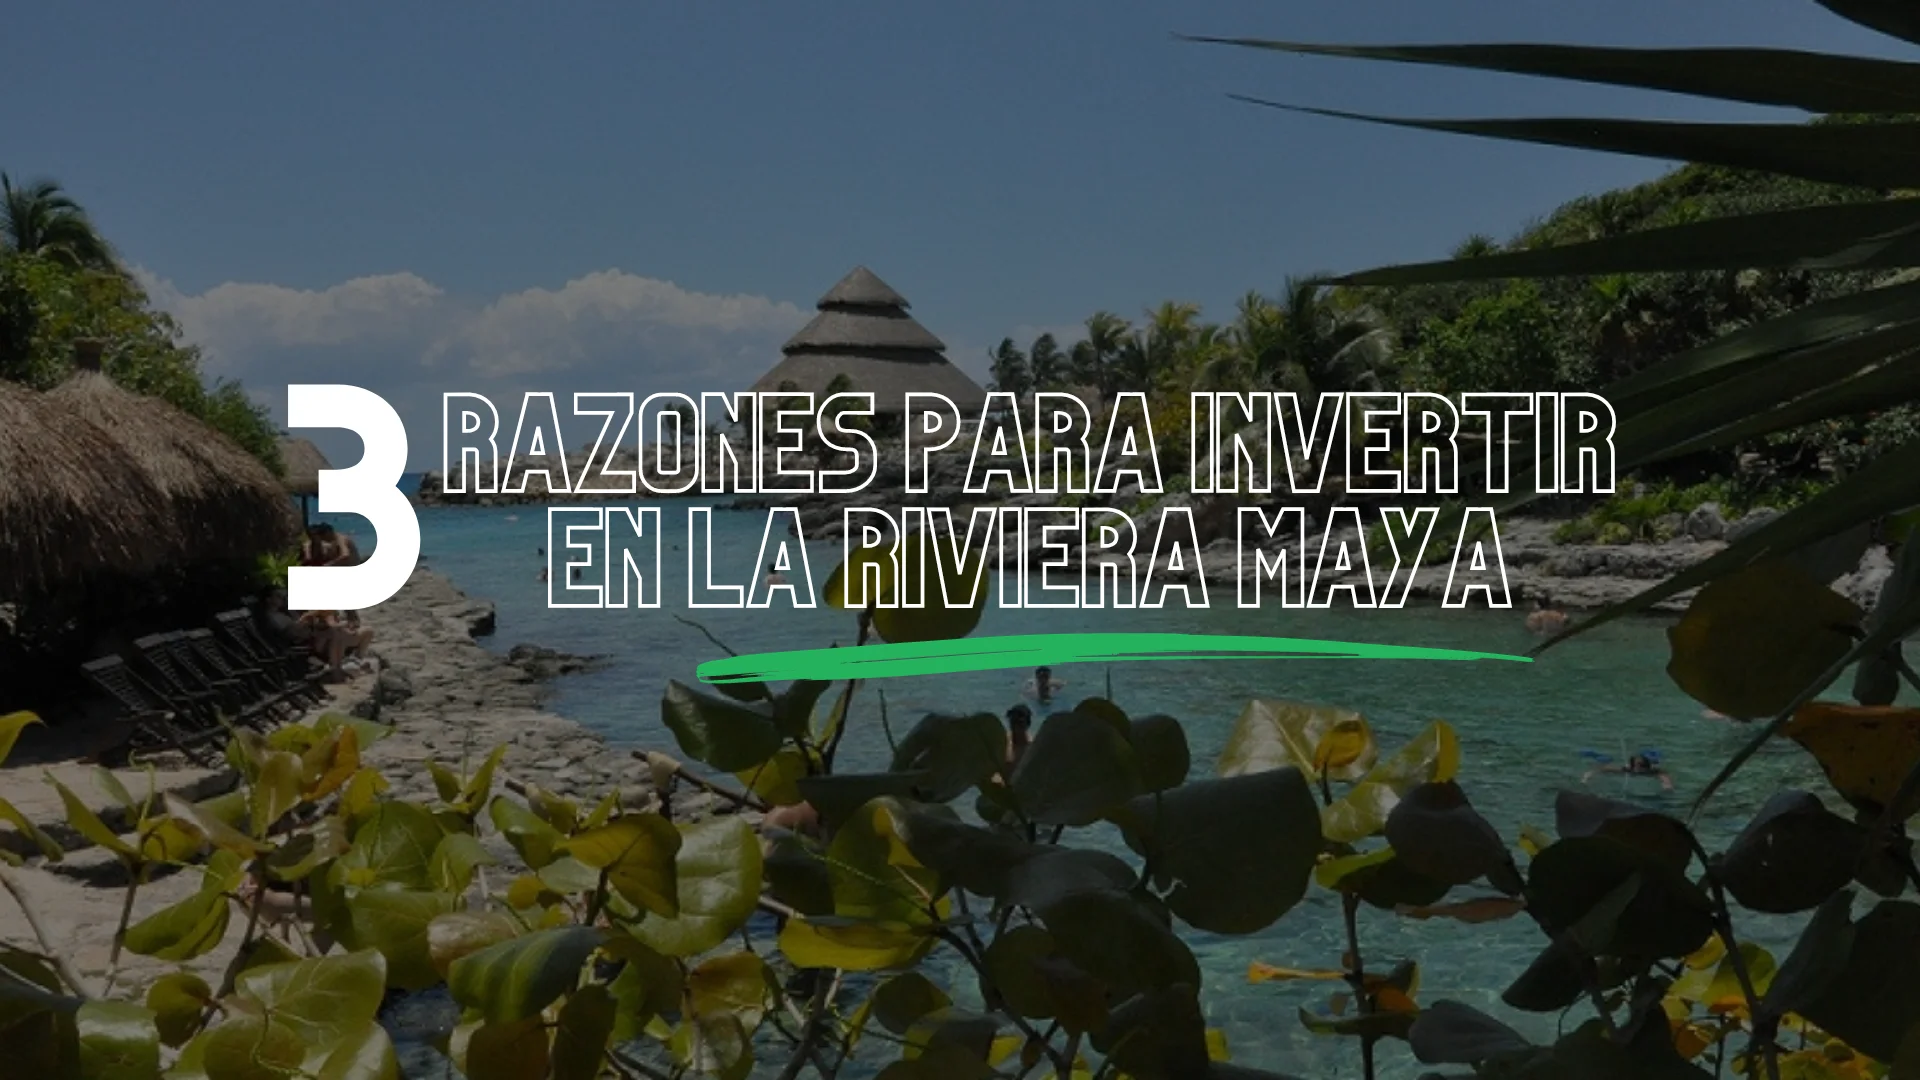 3 razones para invertir en la Riviera Maya